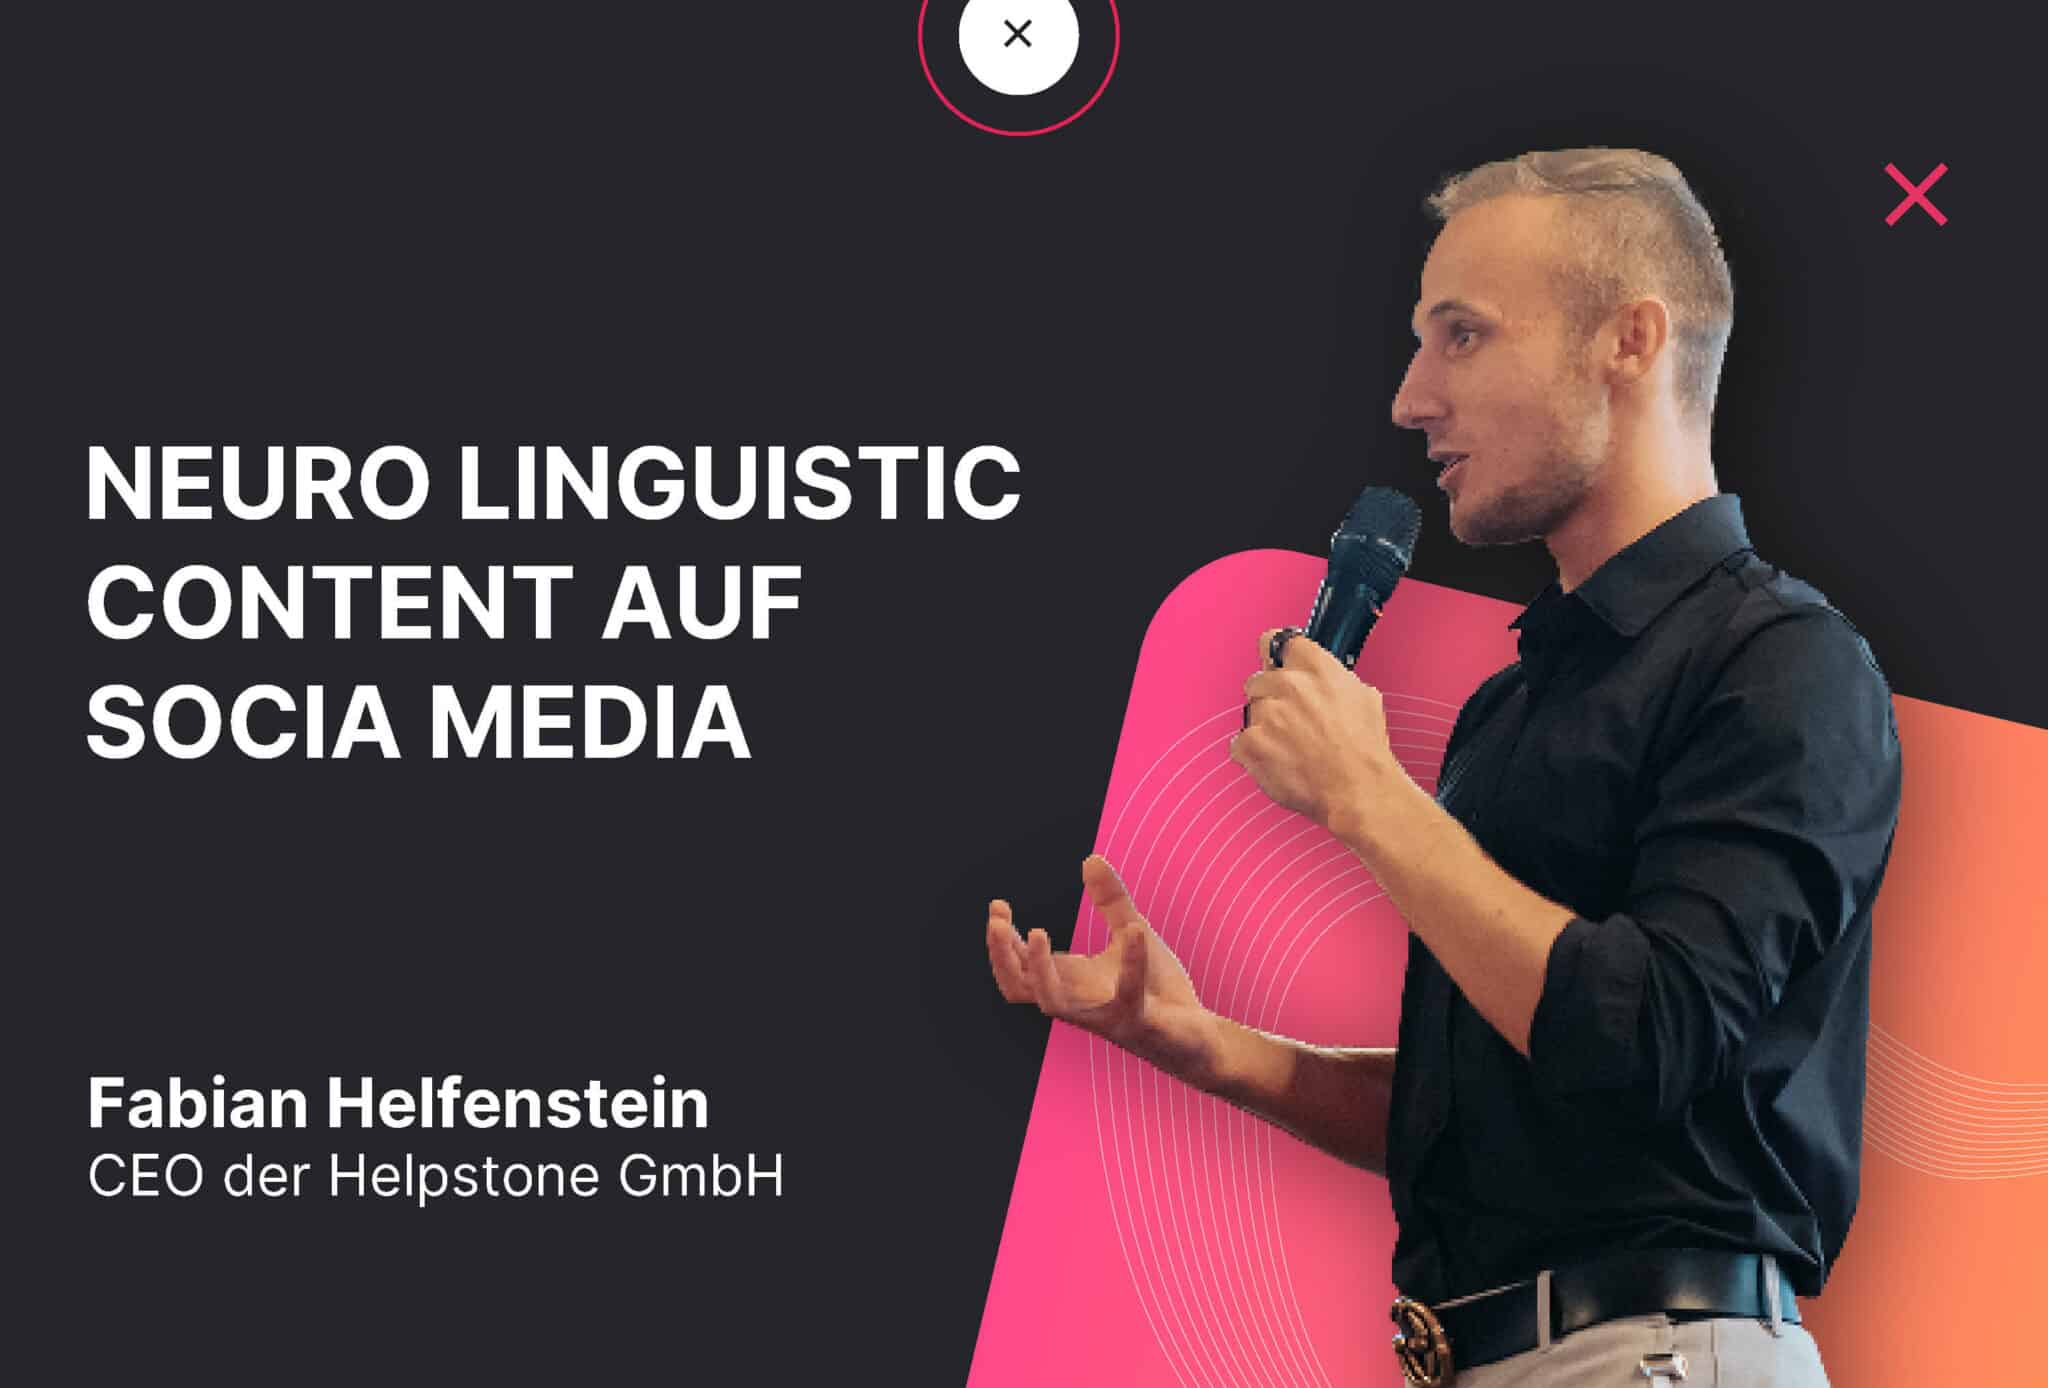 Fabian Helfenstein hält Webinar über Neuro Linguistic Content auf marketing.ch